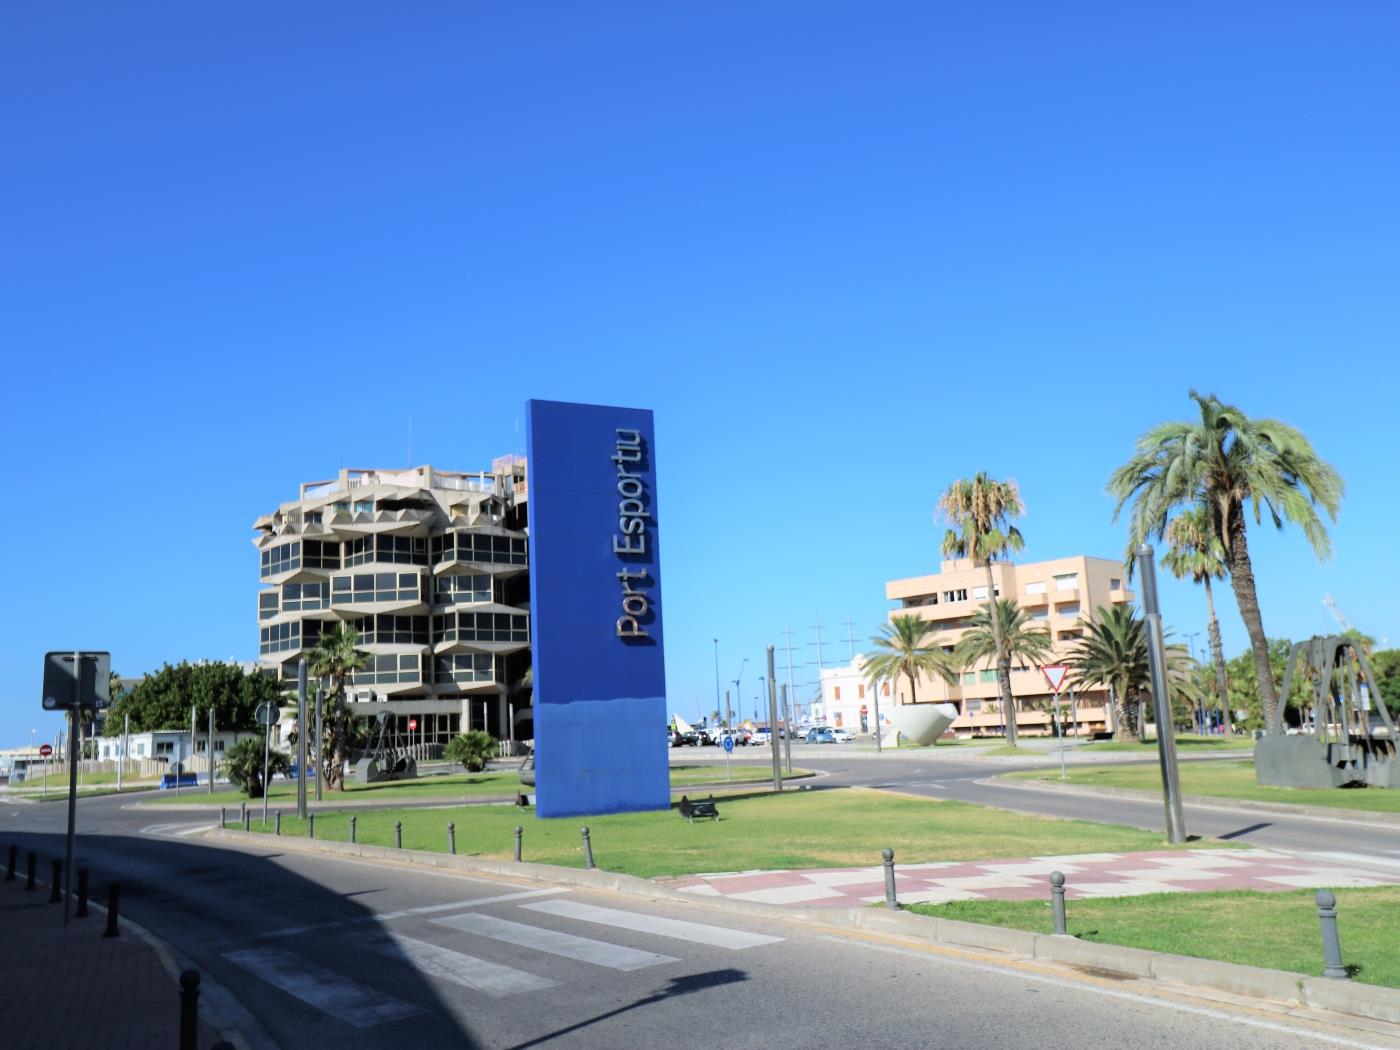 InmoBooking tarraco Mar, Climatizado y cerca de la Playa en Tarragona